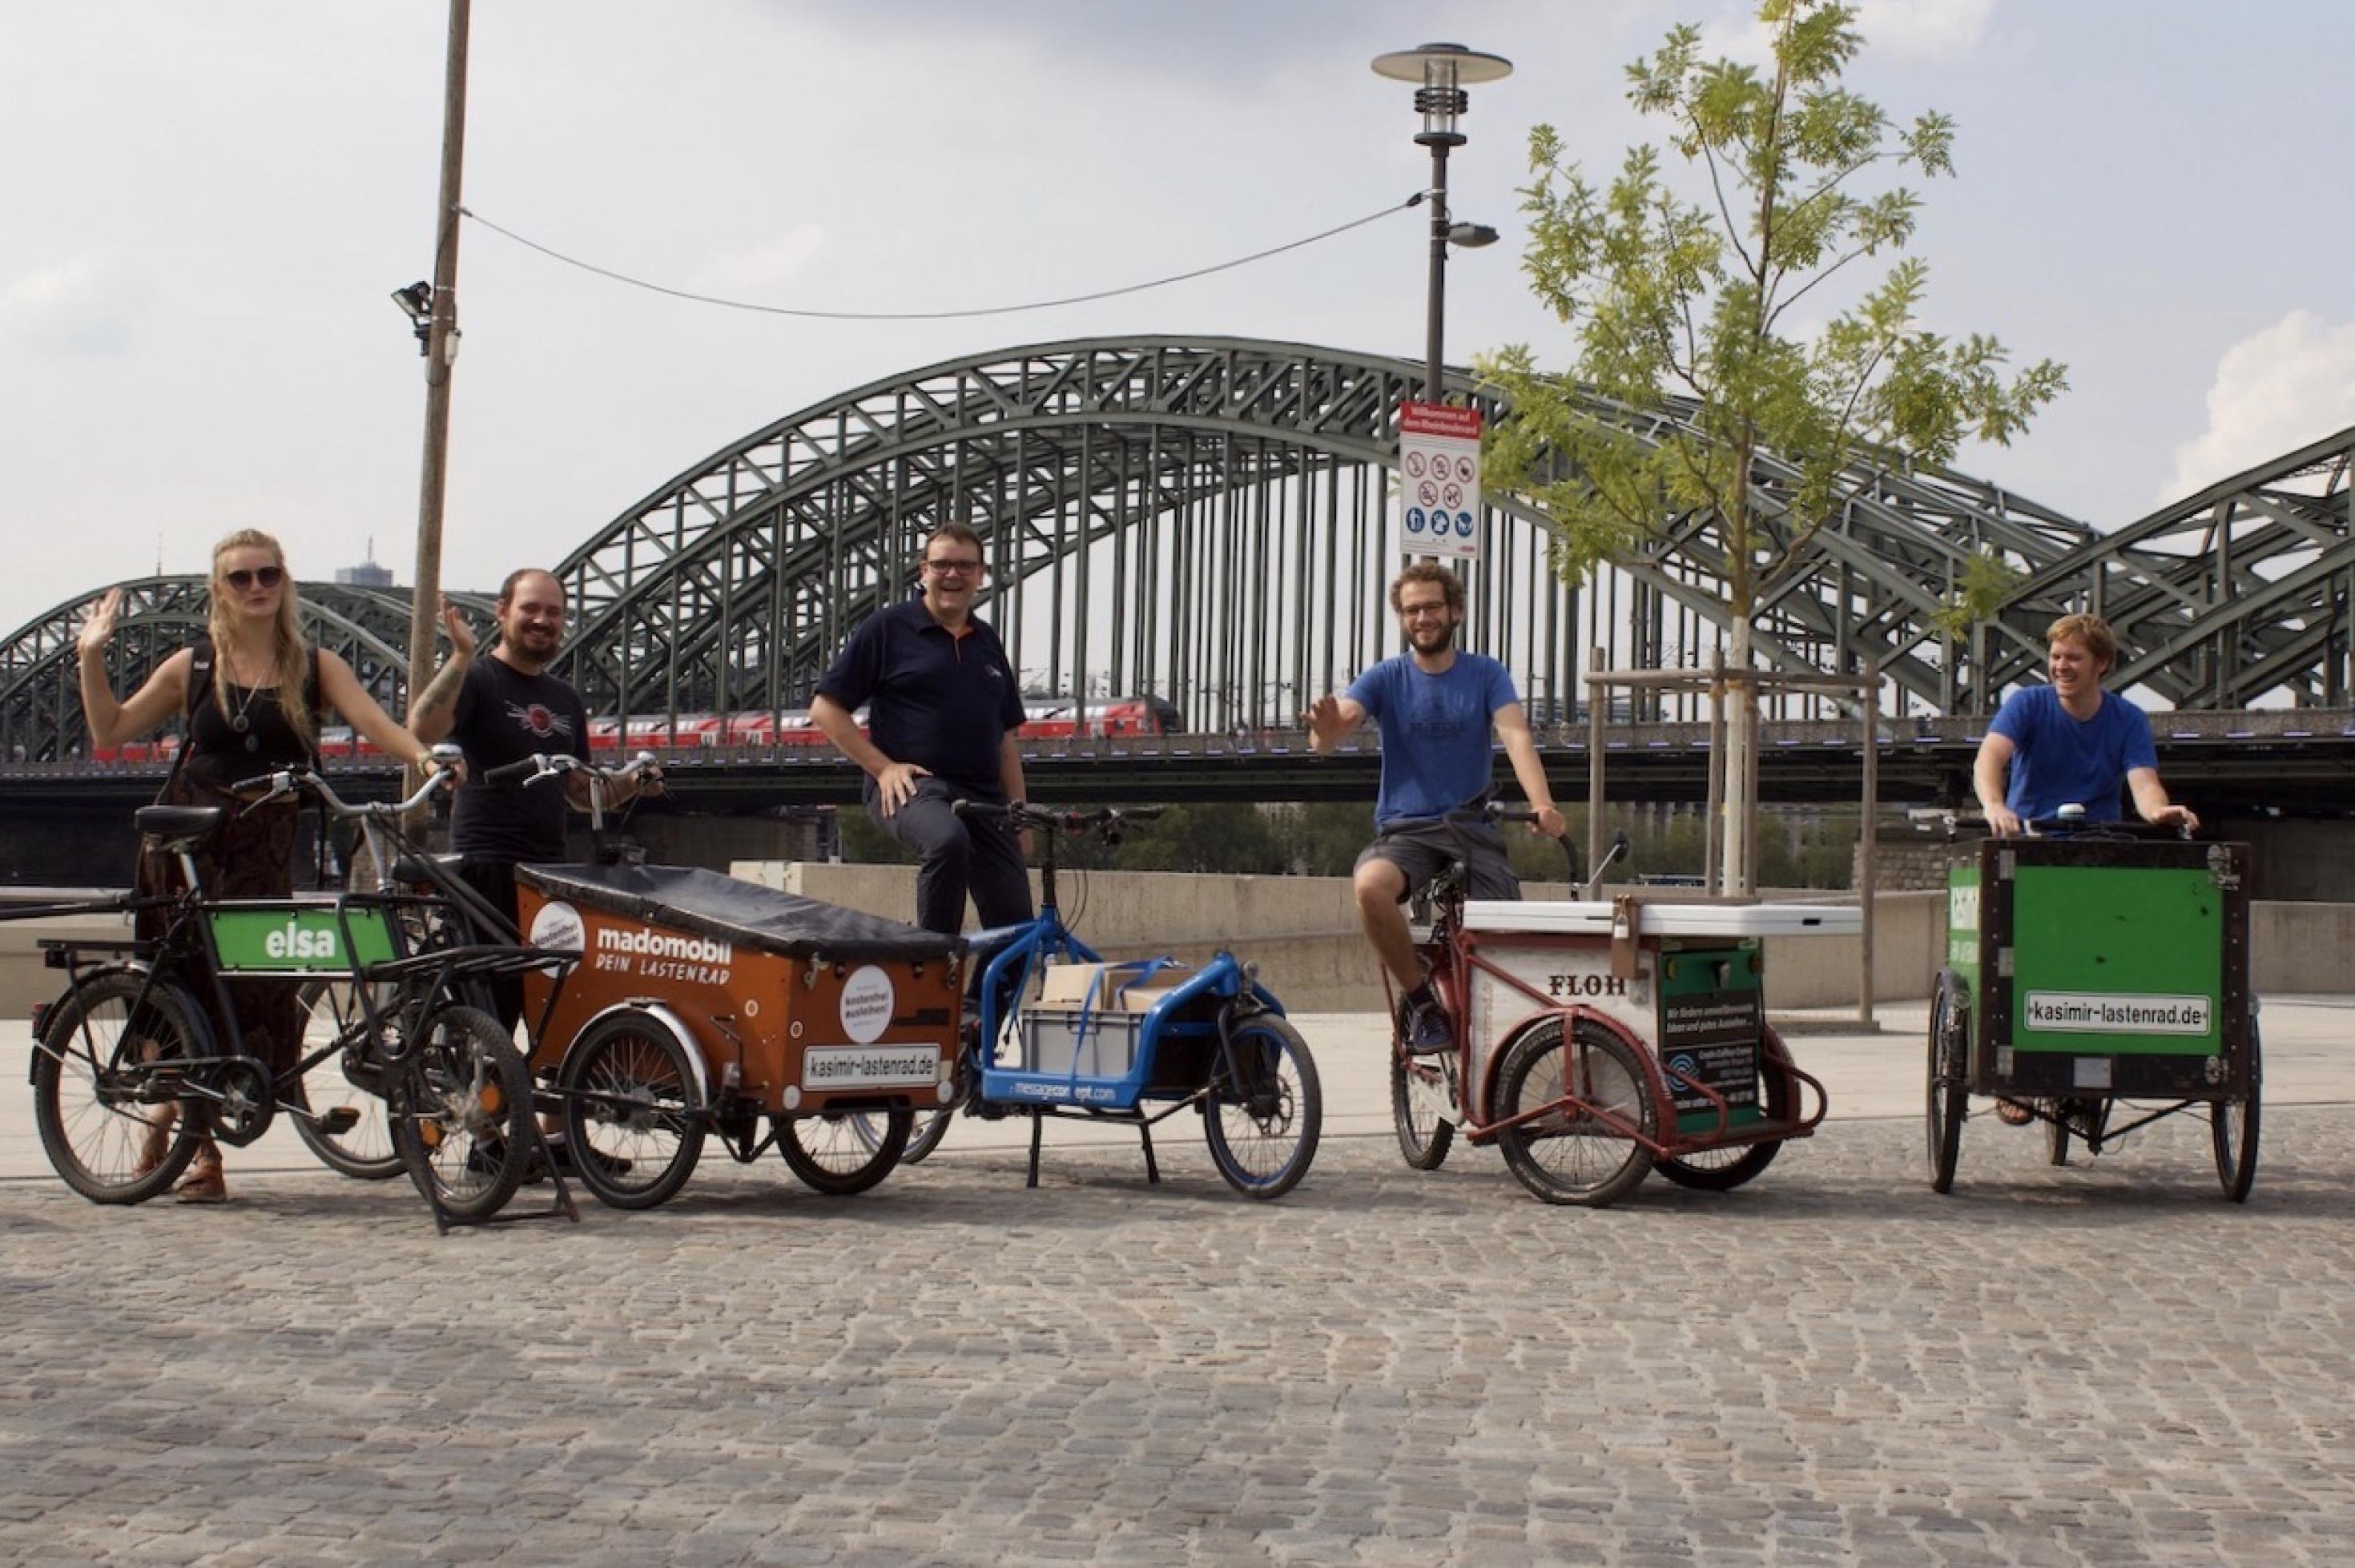 Fünf Fahrer und Fahrerinnen posieren auf unterschiedlichen Transporträdern mit zwei und drei Rädern auf einem freien Platz. Im Hintergrund sieht man die Silhouette der Hohenzollern Brücke.